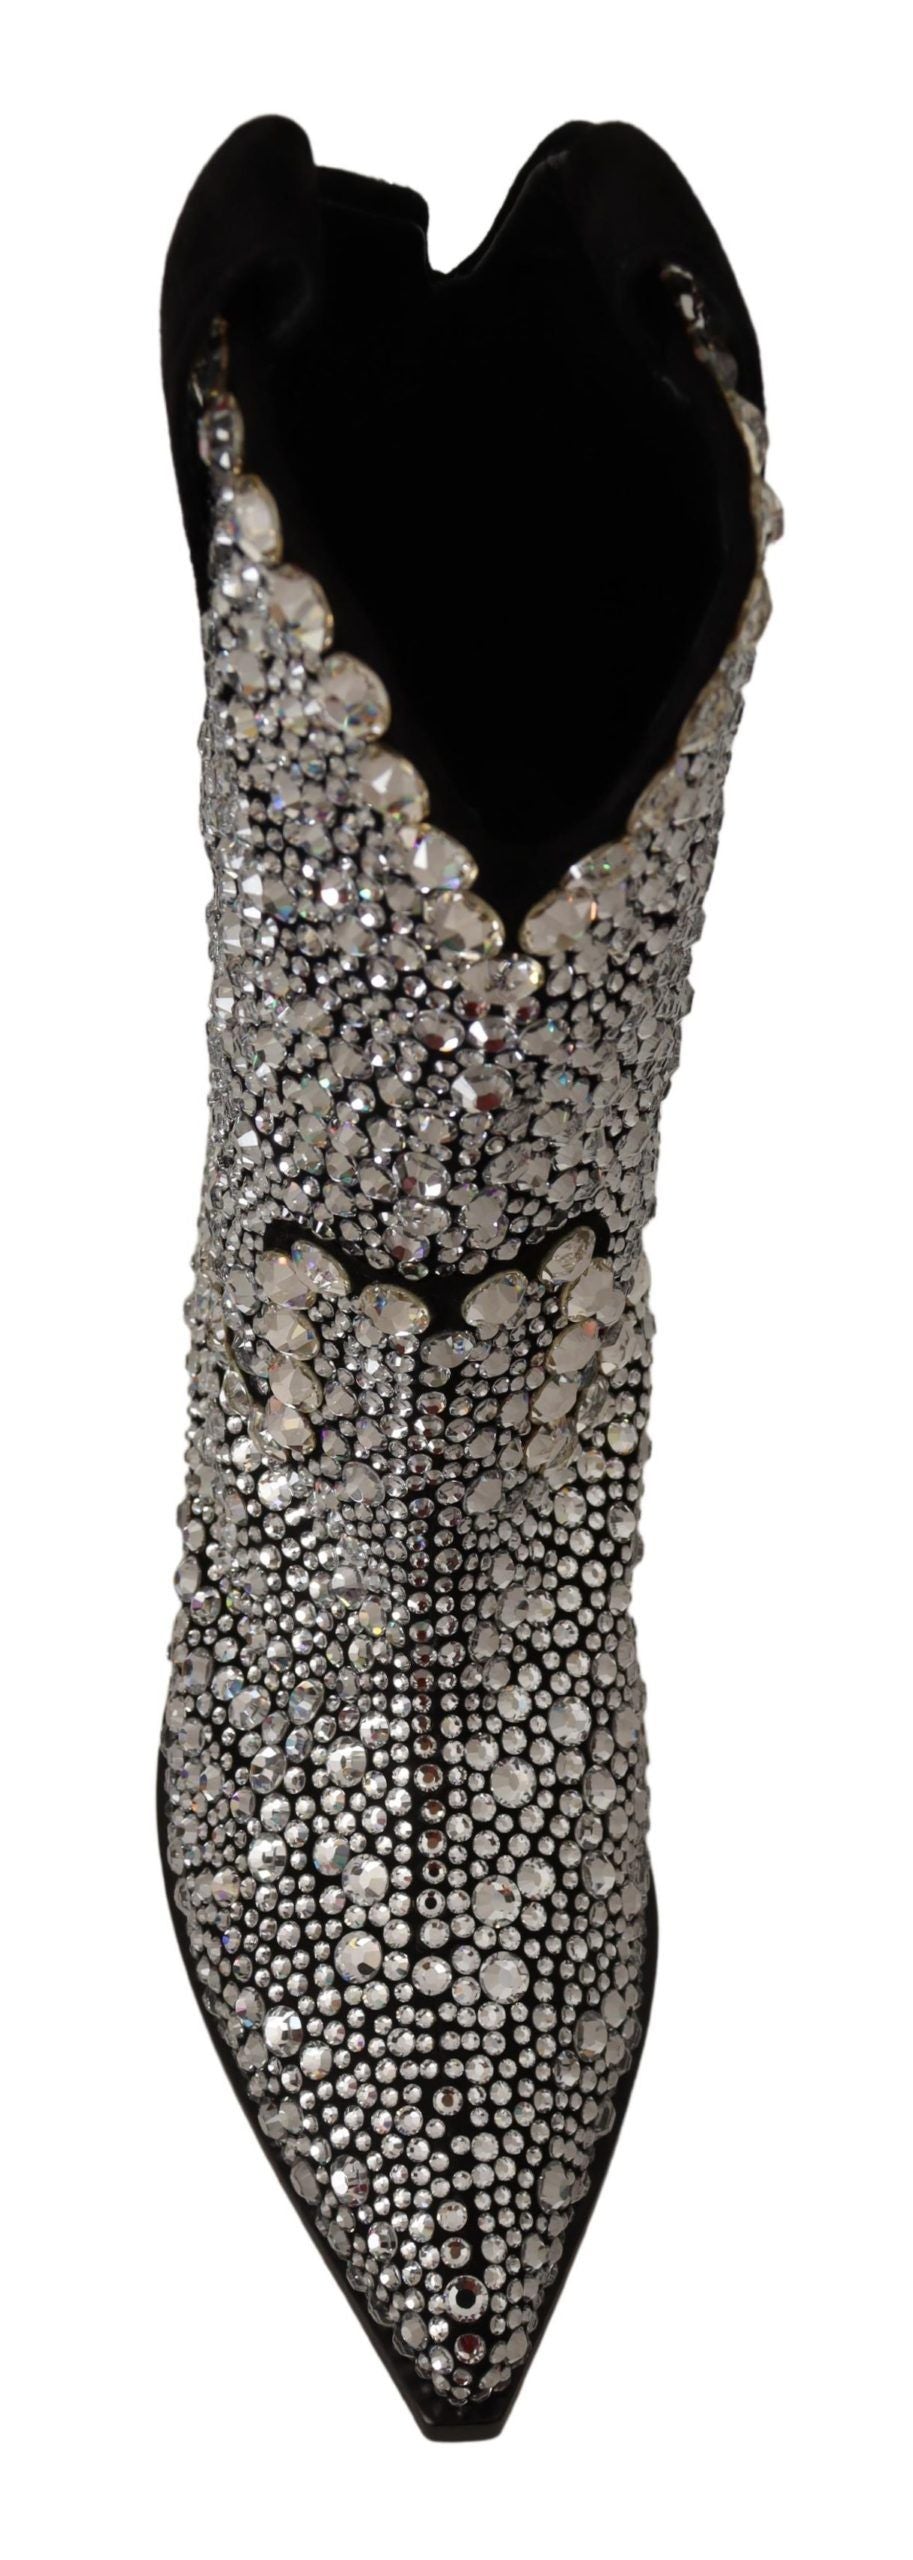 Dolce & Gabbana Crystal-Embellished Black Suede Boots